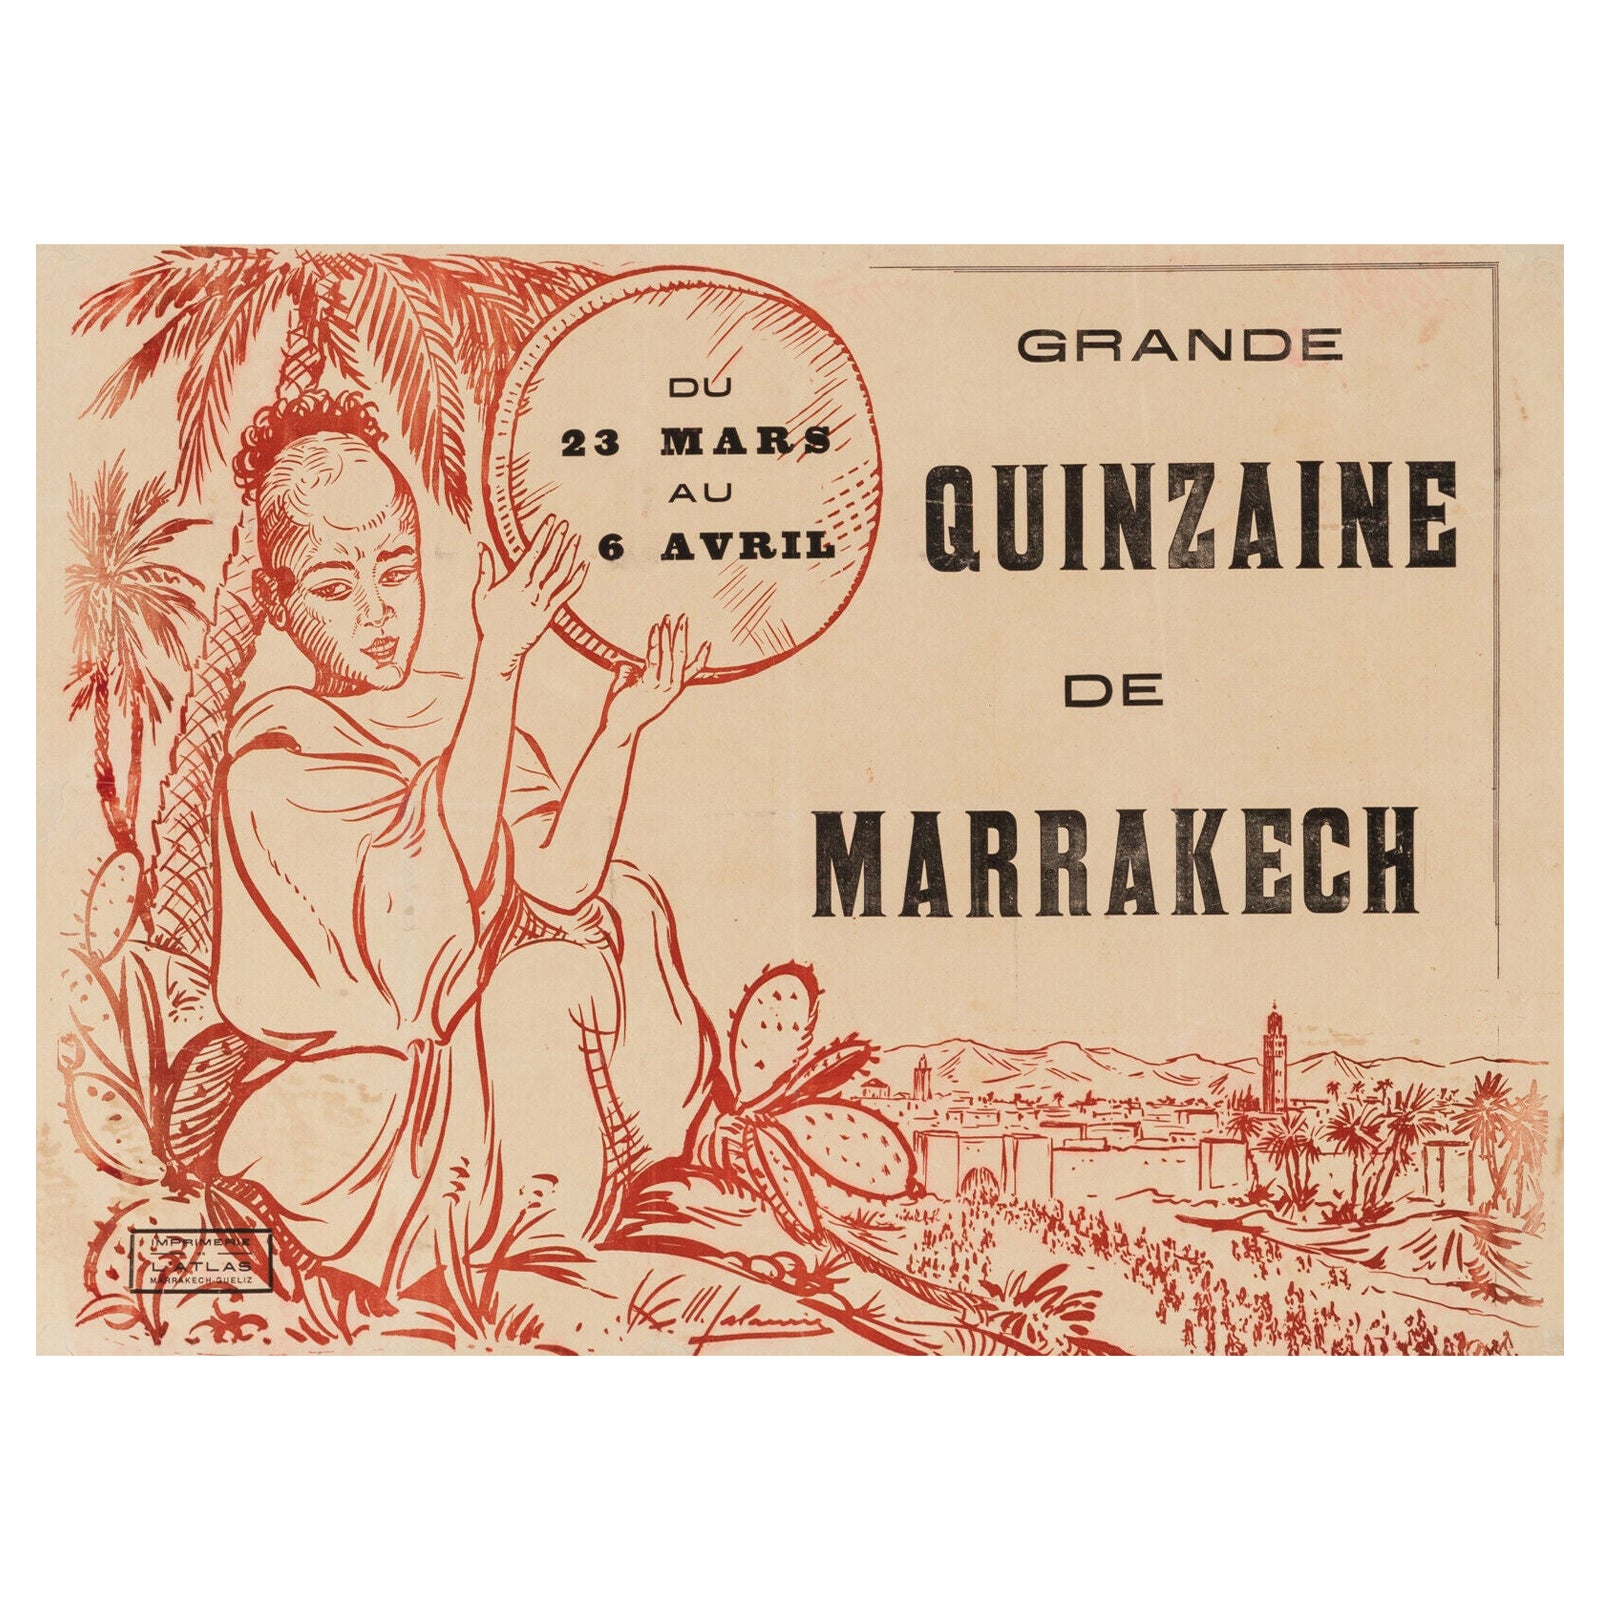 Original Vintage Poster-M. Lalaurie-Grande Quinzaine De Marrakech, c.1915